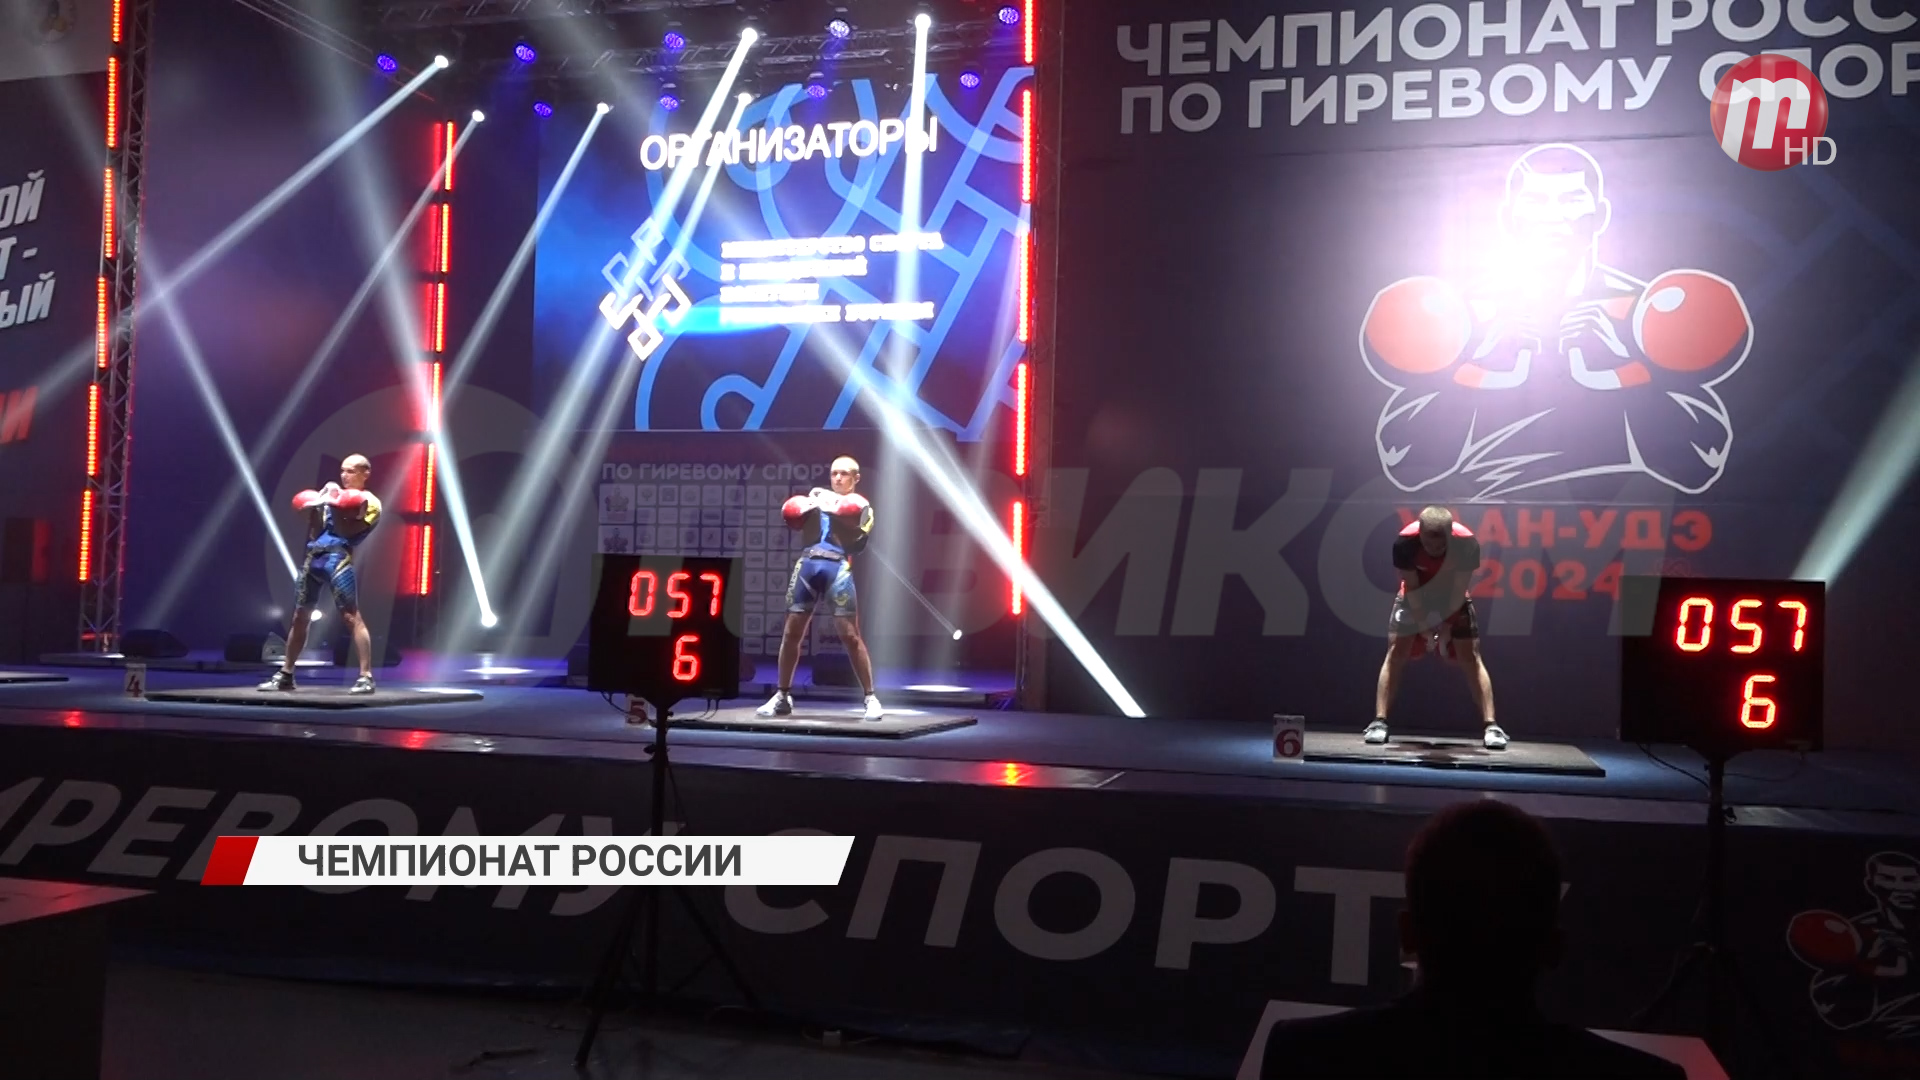 В Бурятии стартовал чемпионат России по гиревому спорту